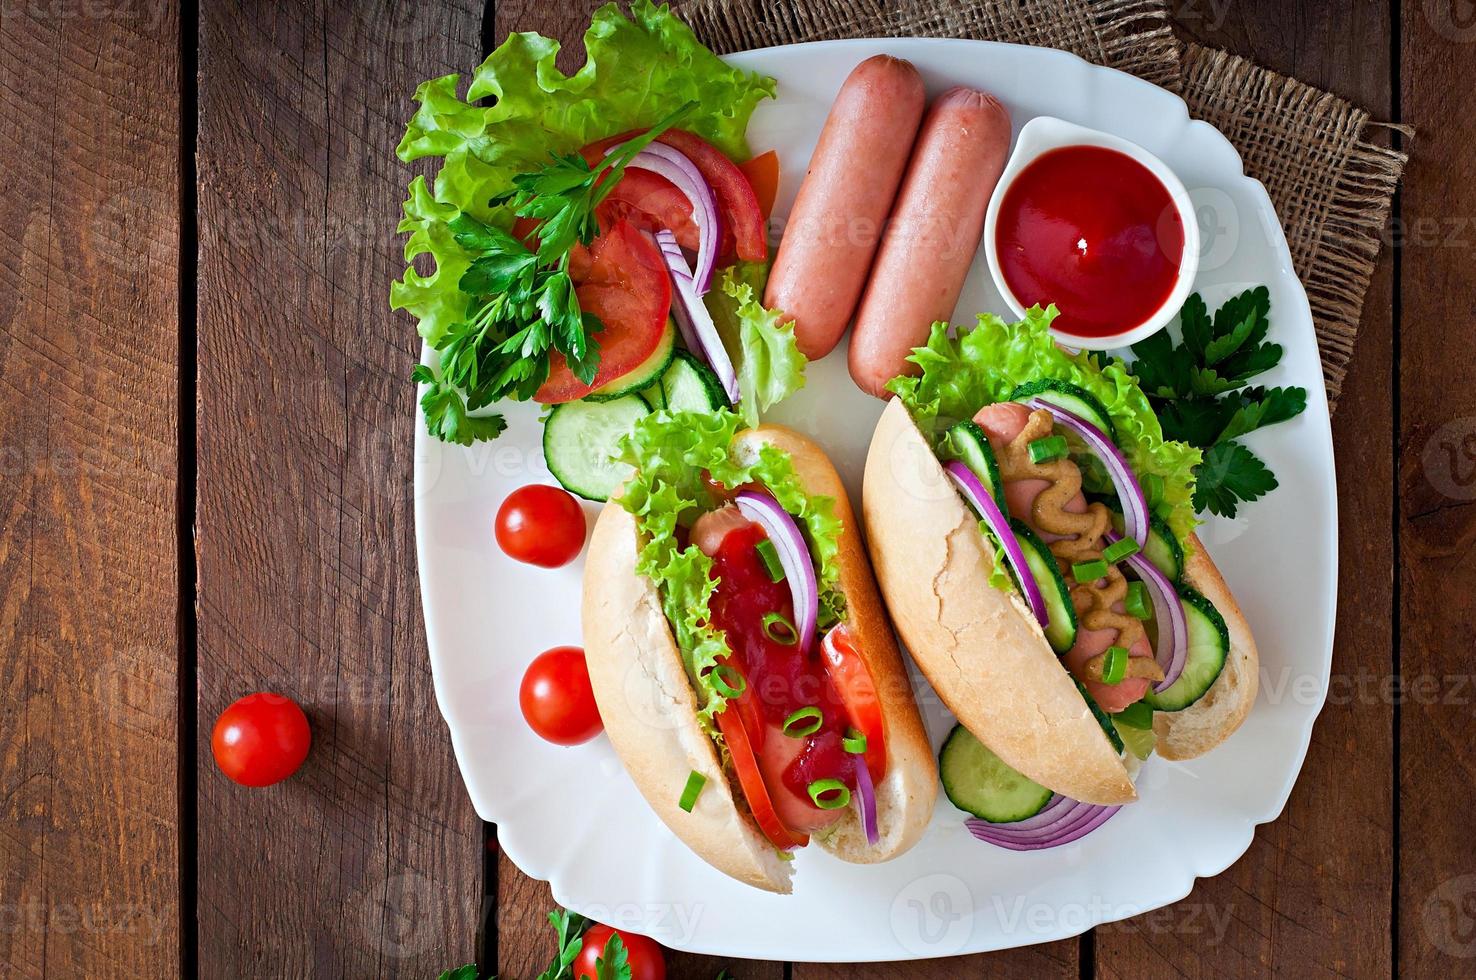 cachorro-quente com ketchup, mostarda, alface e legumes na mesa de madeira foto